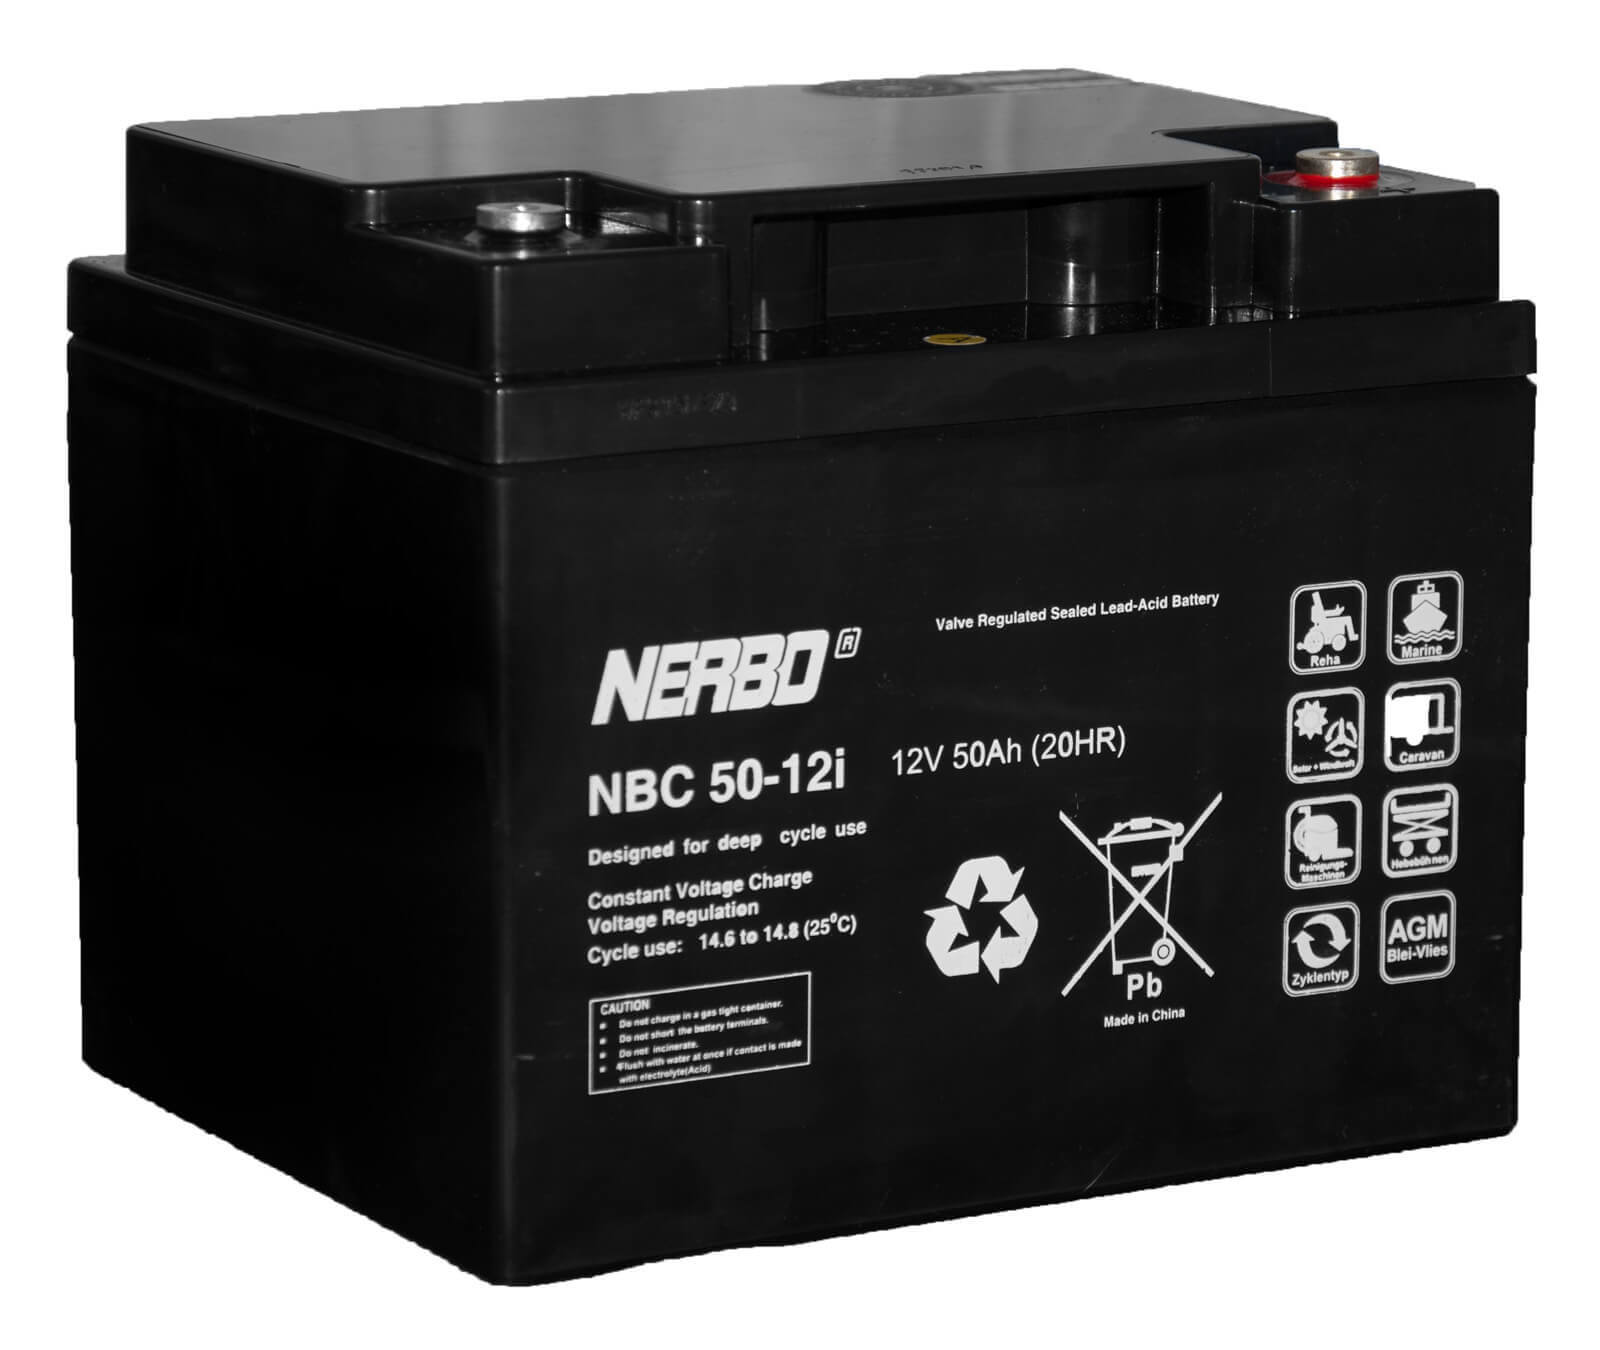 Nerbo NBC 50-12i - 12V 50Ah VRLA-AGM Akku Batterie Zyklentyp